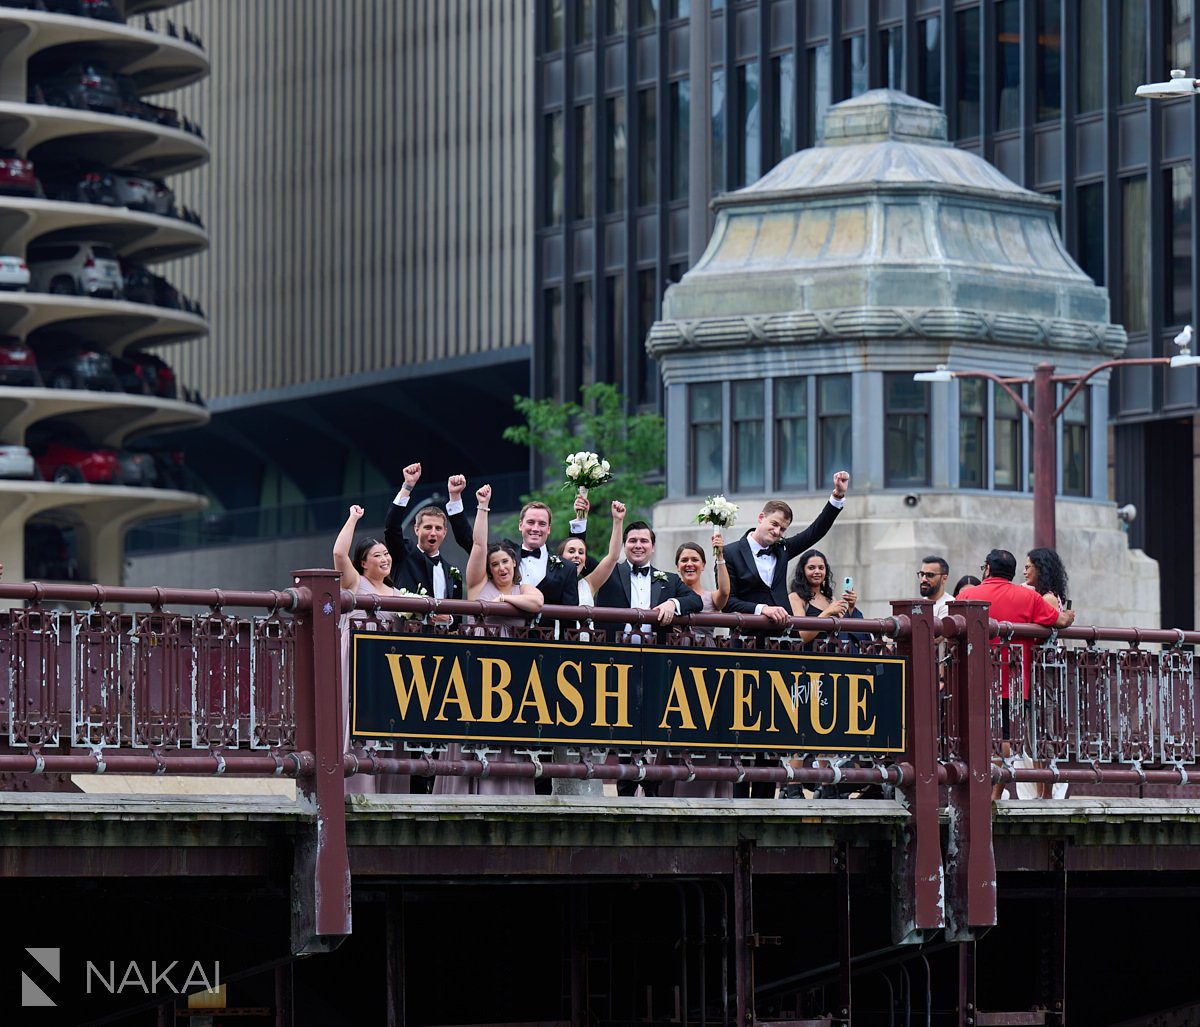 chicago riverwalk wedding photos